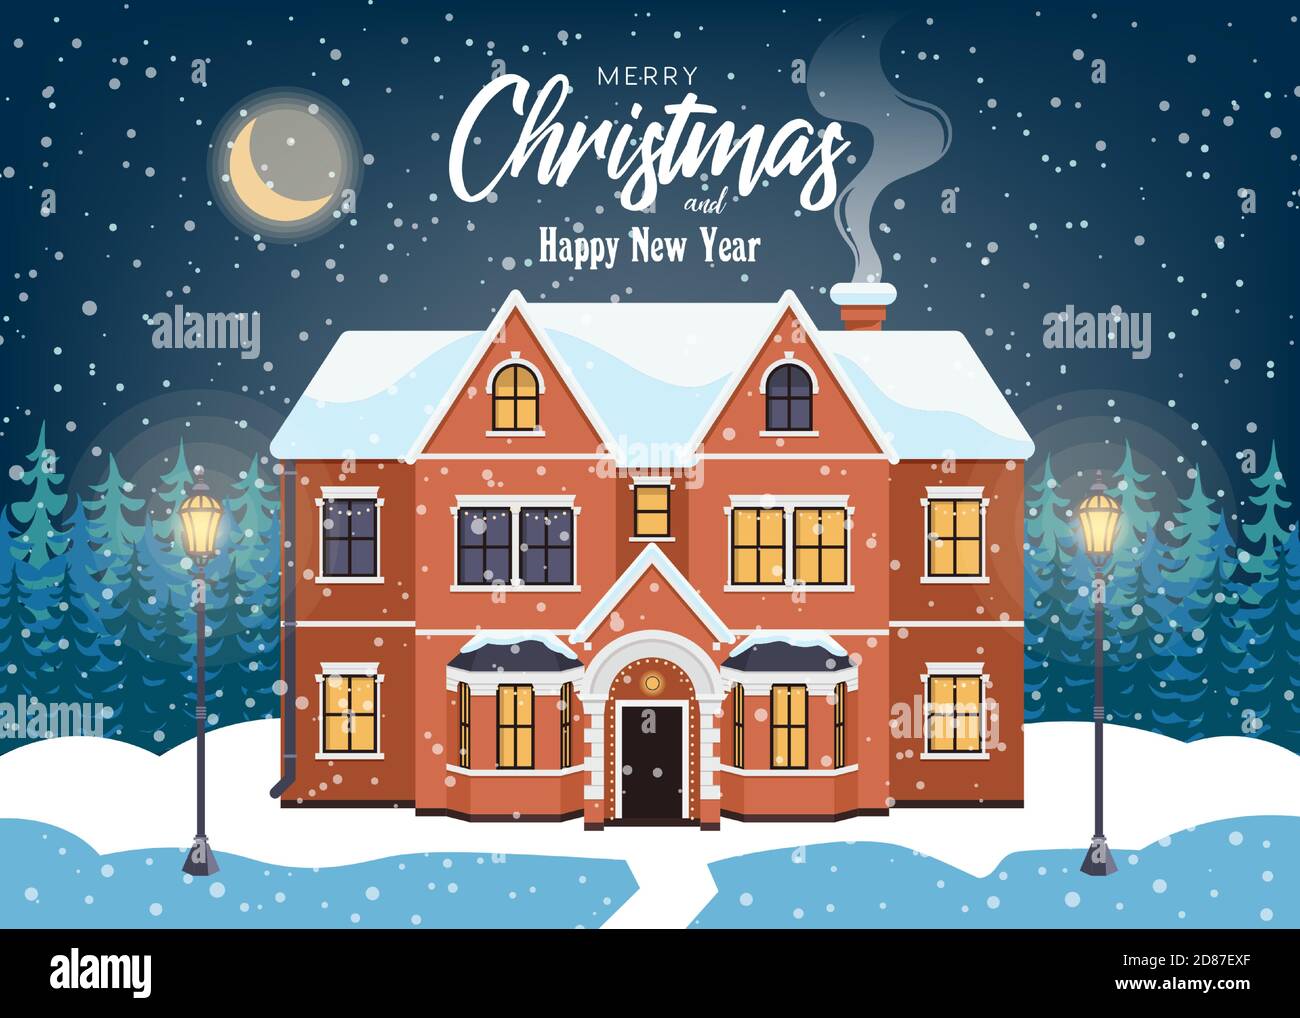 Haus im Schneefall. Weihnachten Grußkarte, Winter Hintergrund, Urlaub Poster, Vektor-Illustration. Stock Vektor